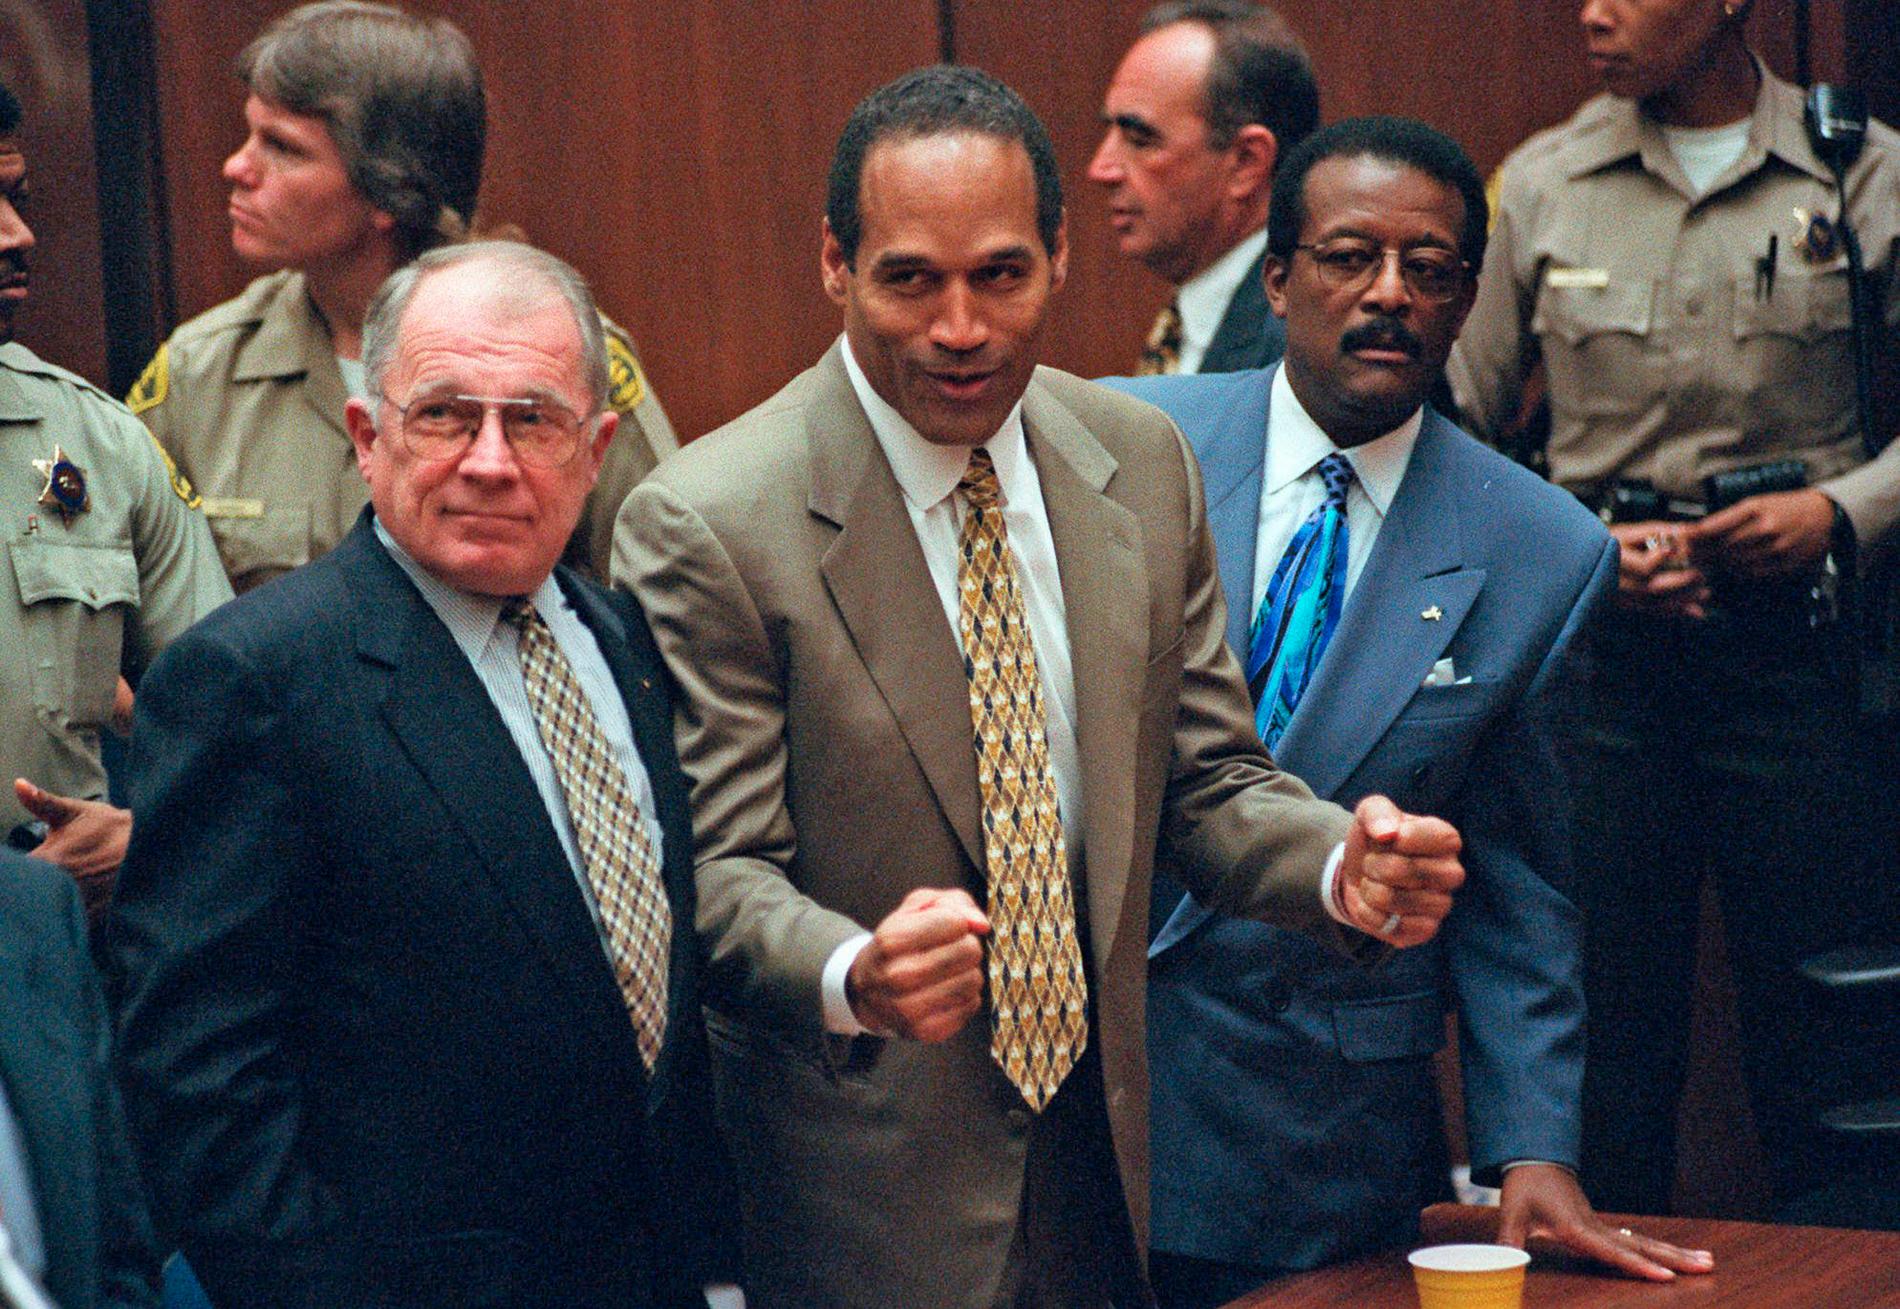 Mordrättegången där Simpson anklagades för att 1994 ha mördat sitt ex Nicole Brown Simpson.